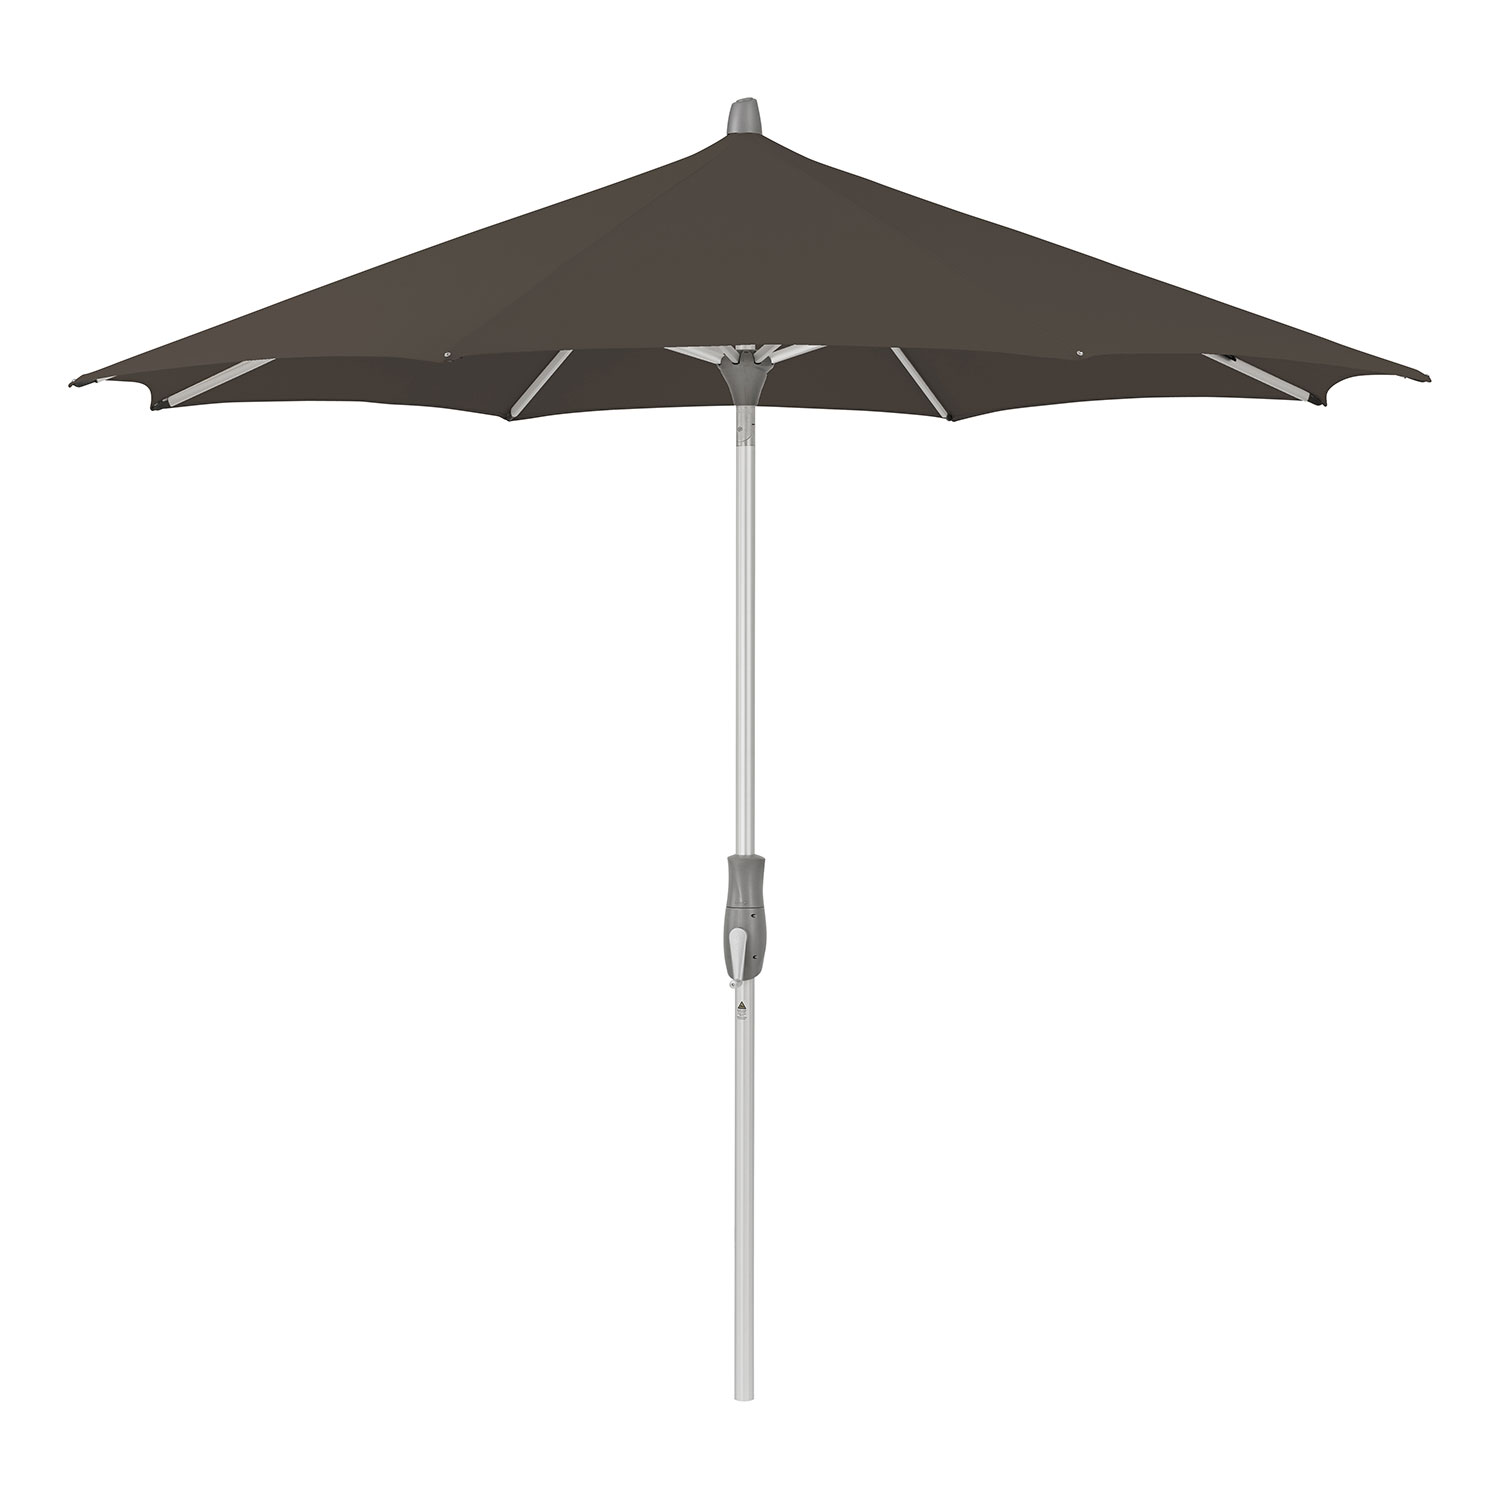 Glatz Alu-twist parasoll 330 cm #155 antracit